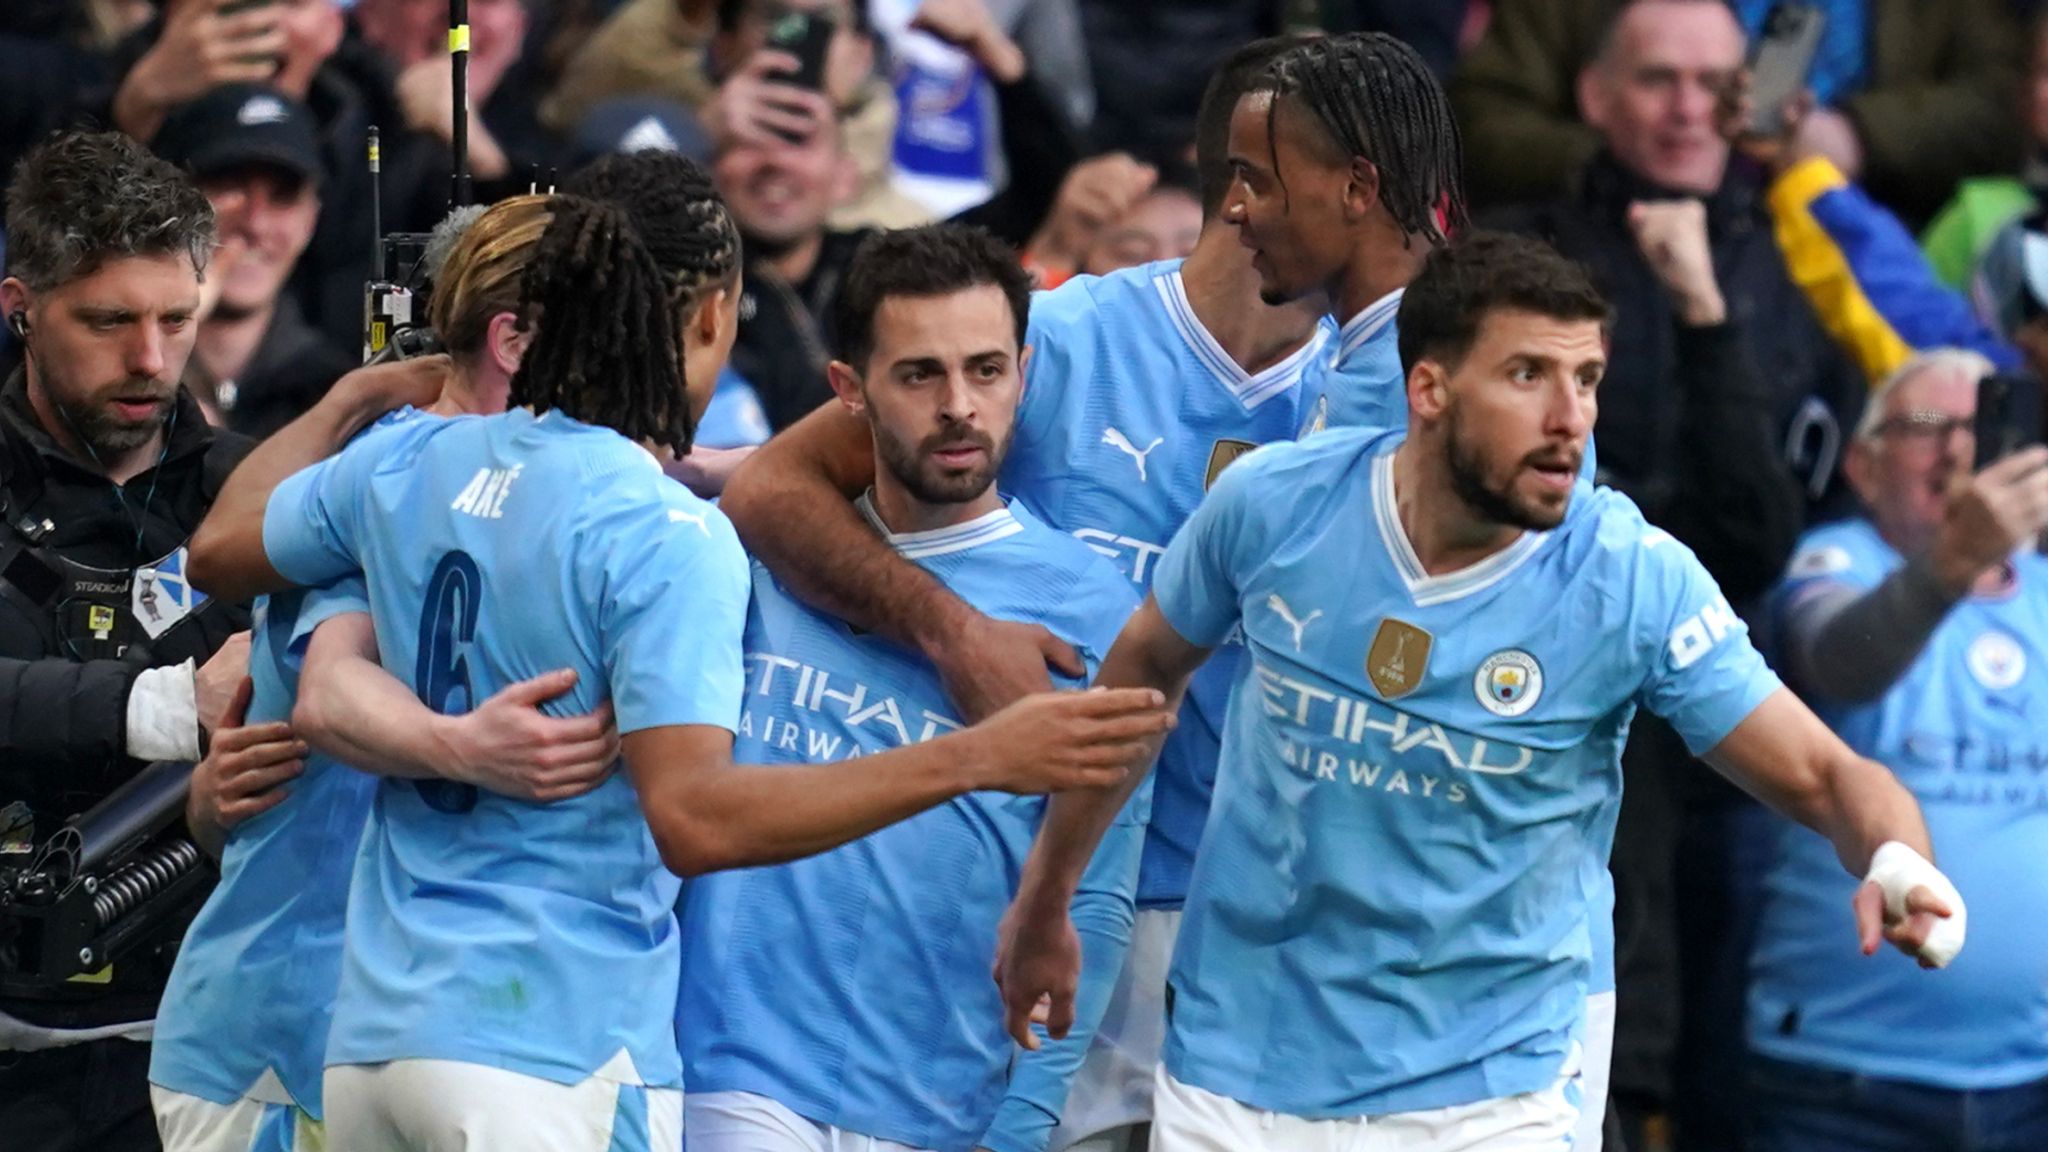 Manchester City Triumphs Over Chelsea in Tense FA Cup Semi-Final Showdown